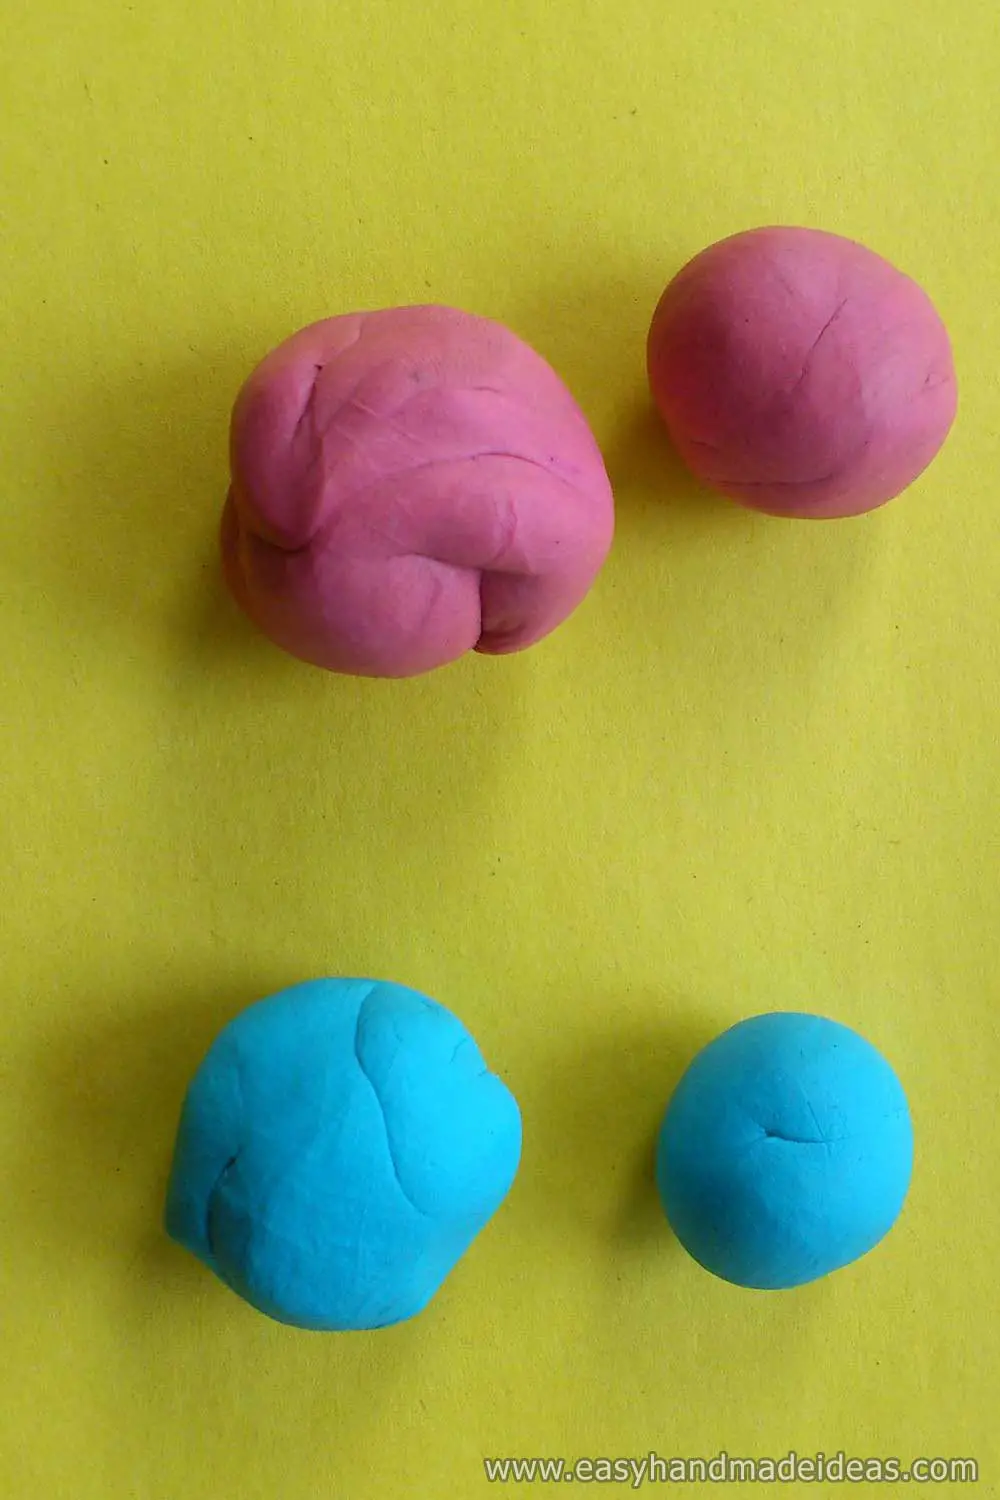 Four Plasticine Balls